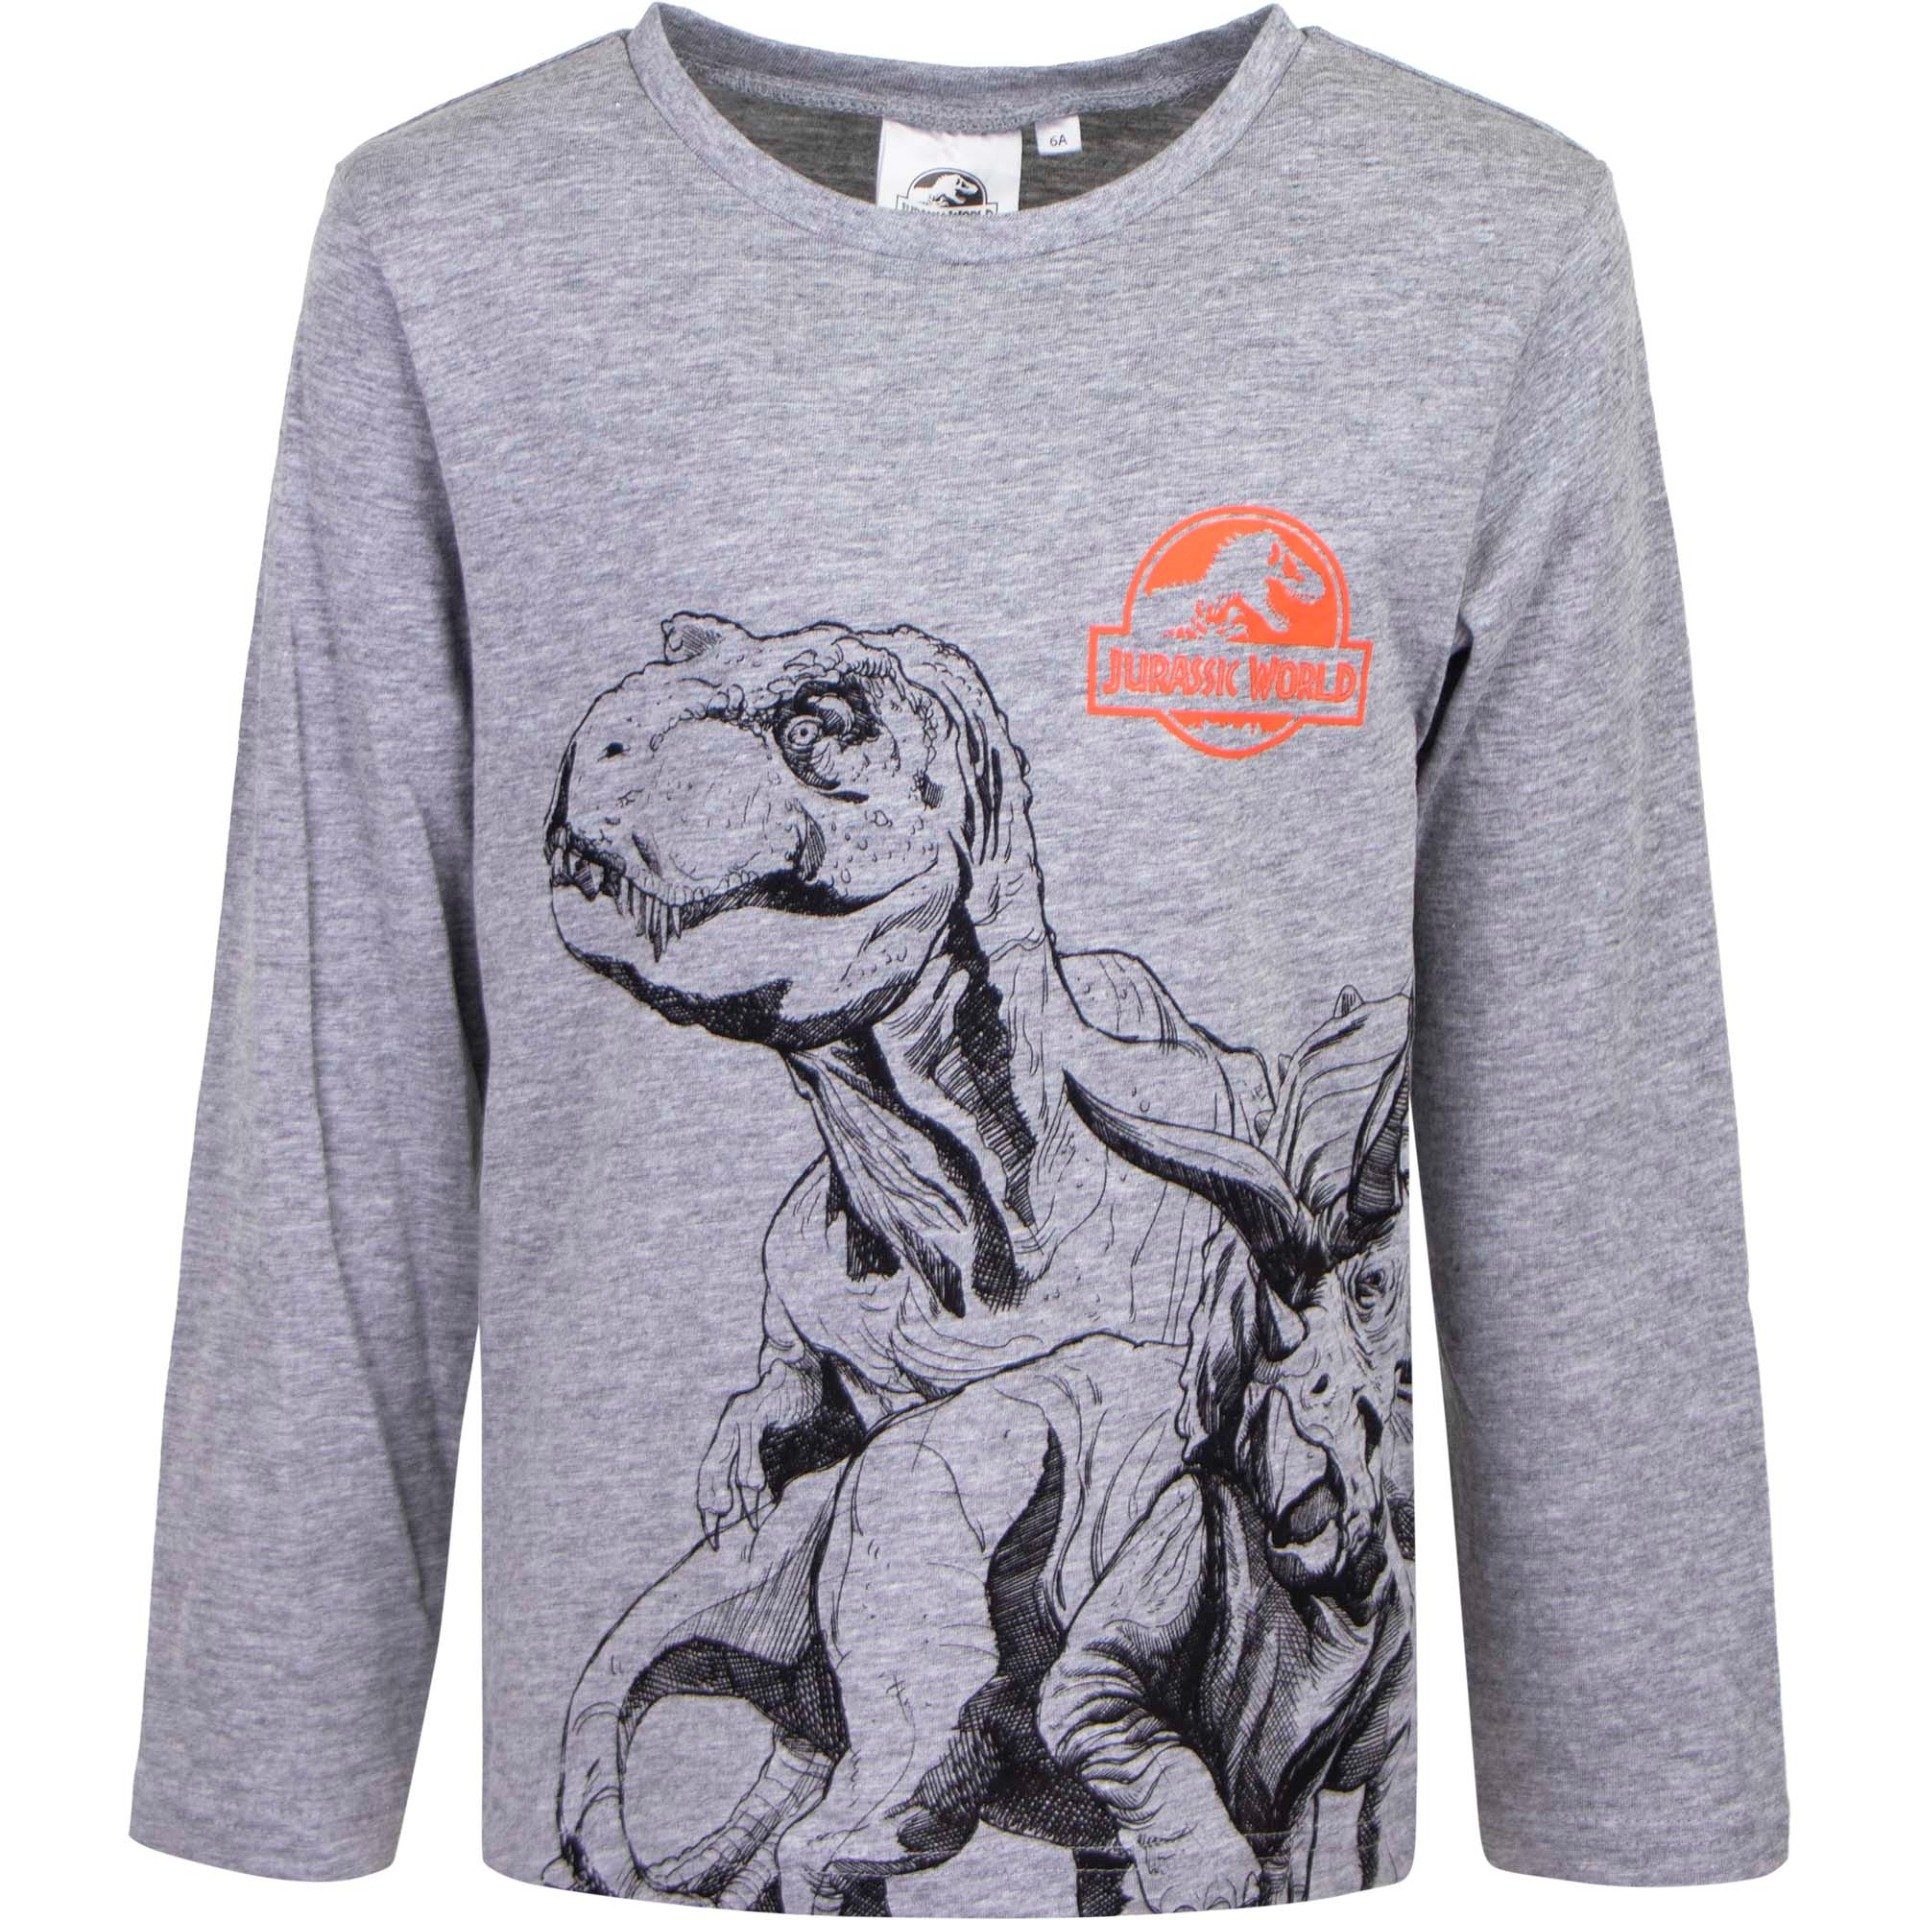 Jurassic World Langarmshirt Kinder Shirt mit Dinos T-Rex Gr. 98 bis 128, in Grün oder Grau